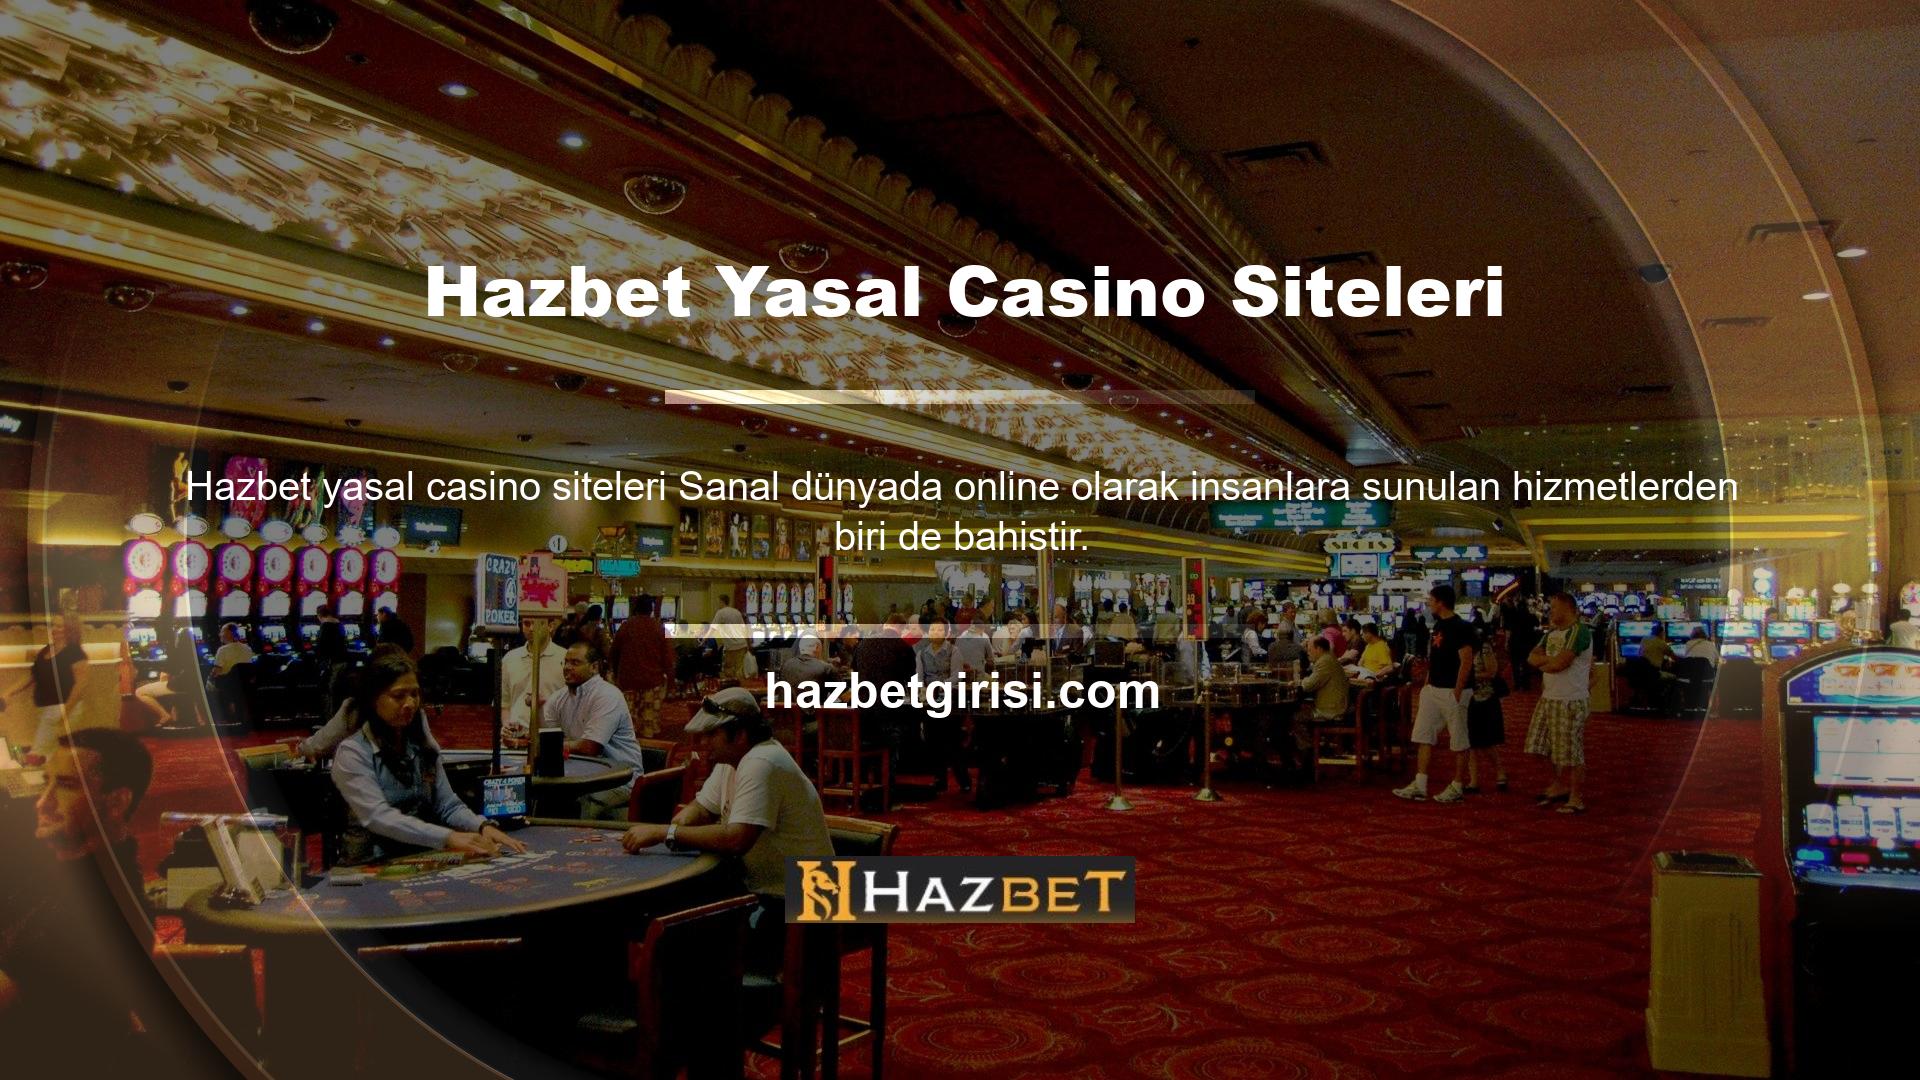 Casino oyunları casino siteleri tarafından sağlanmaktadır